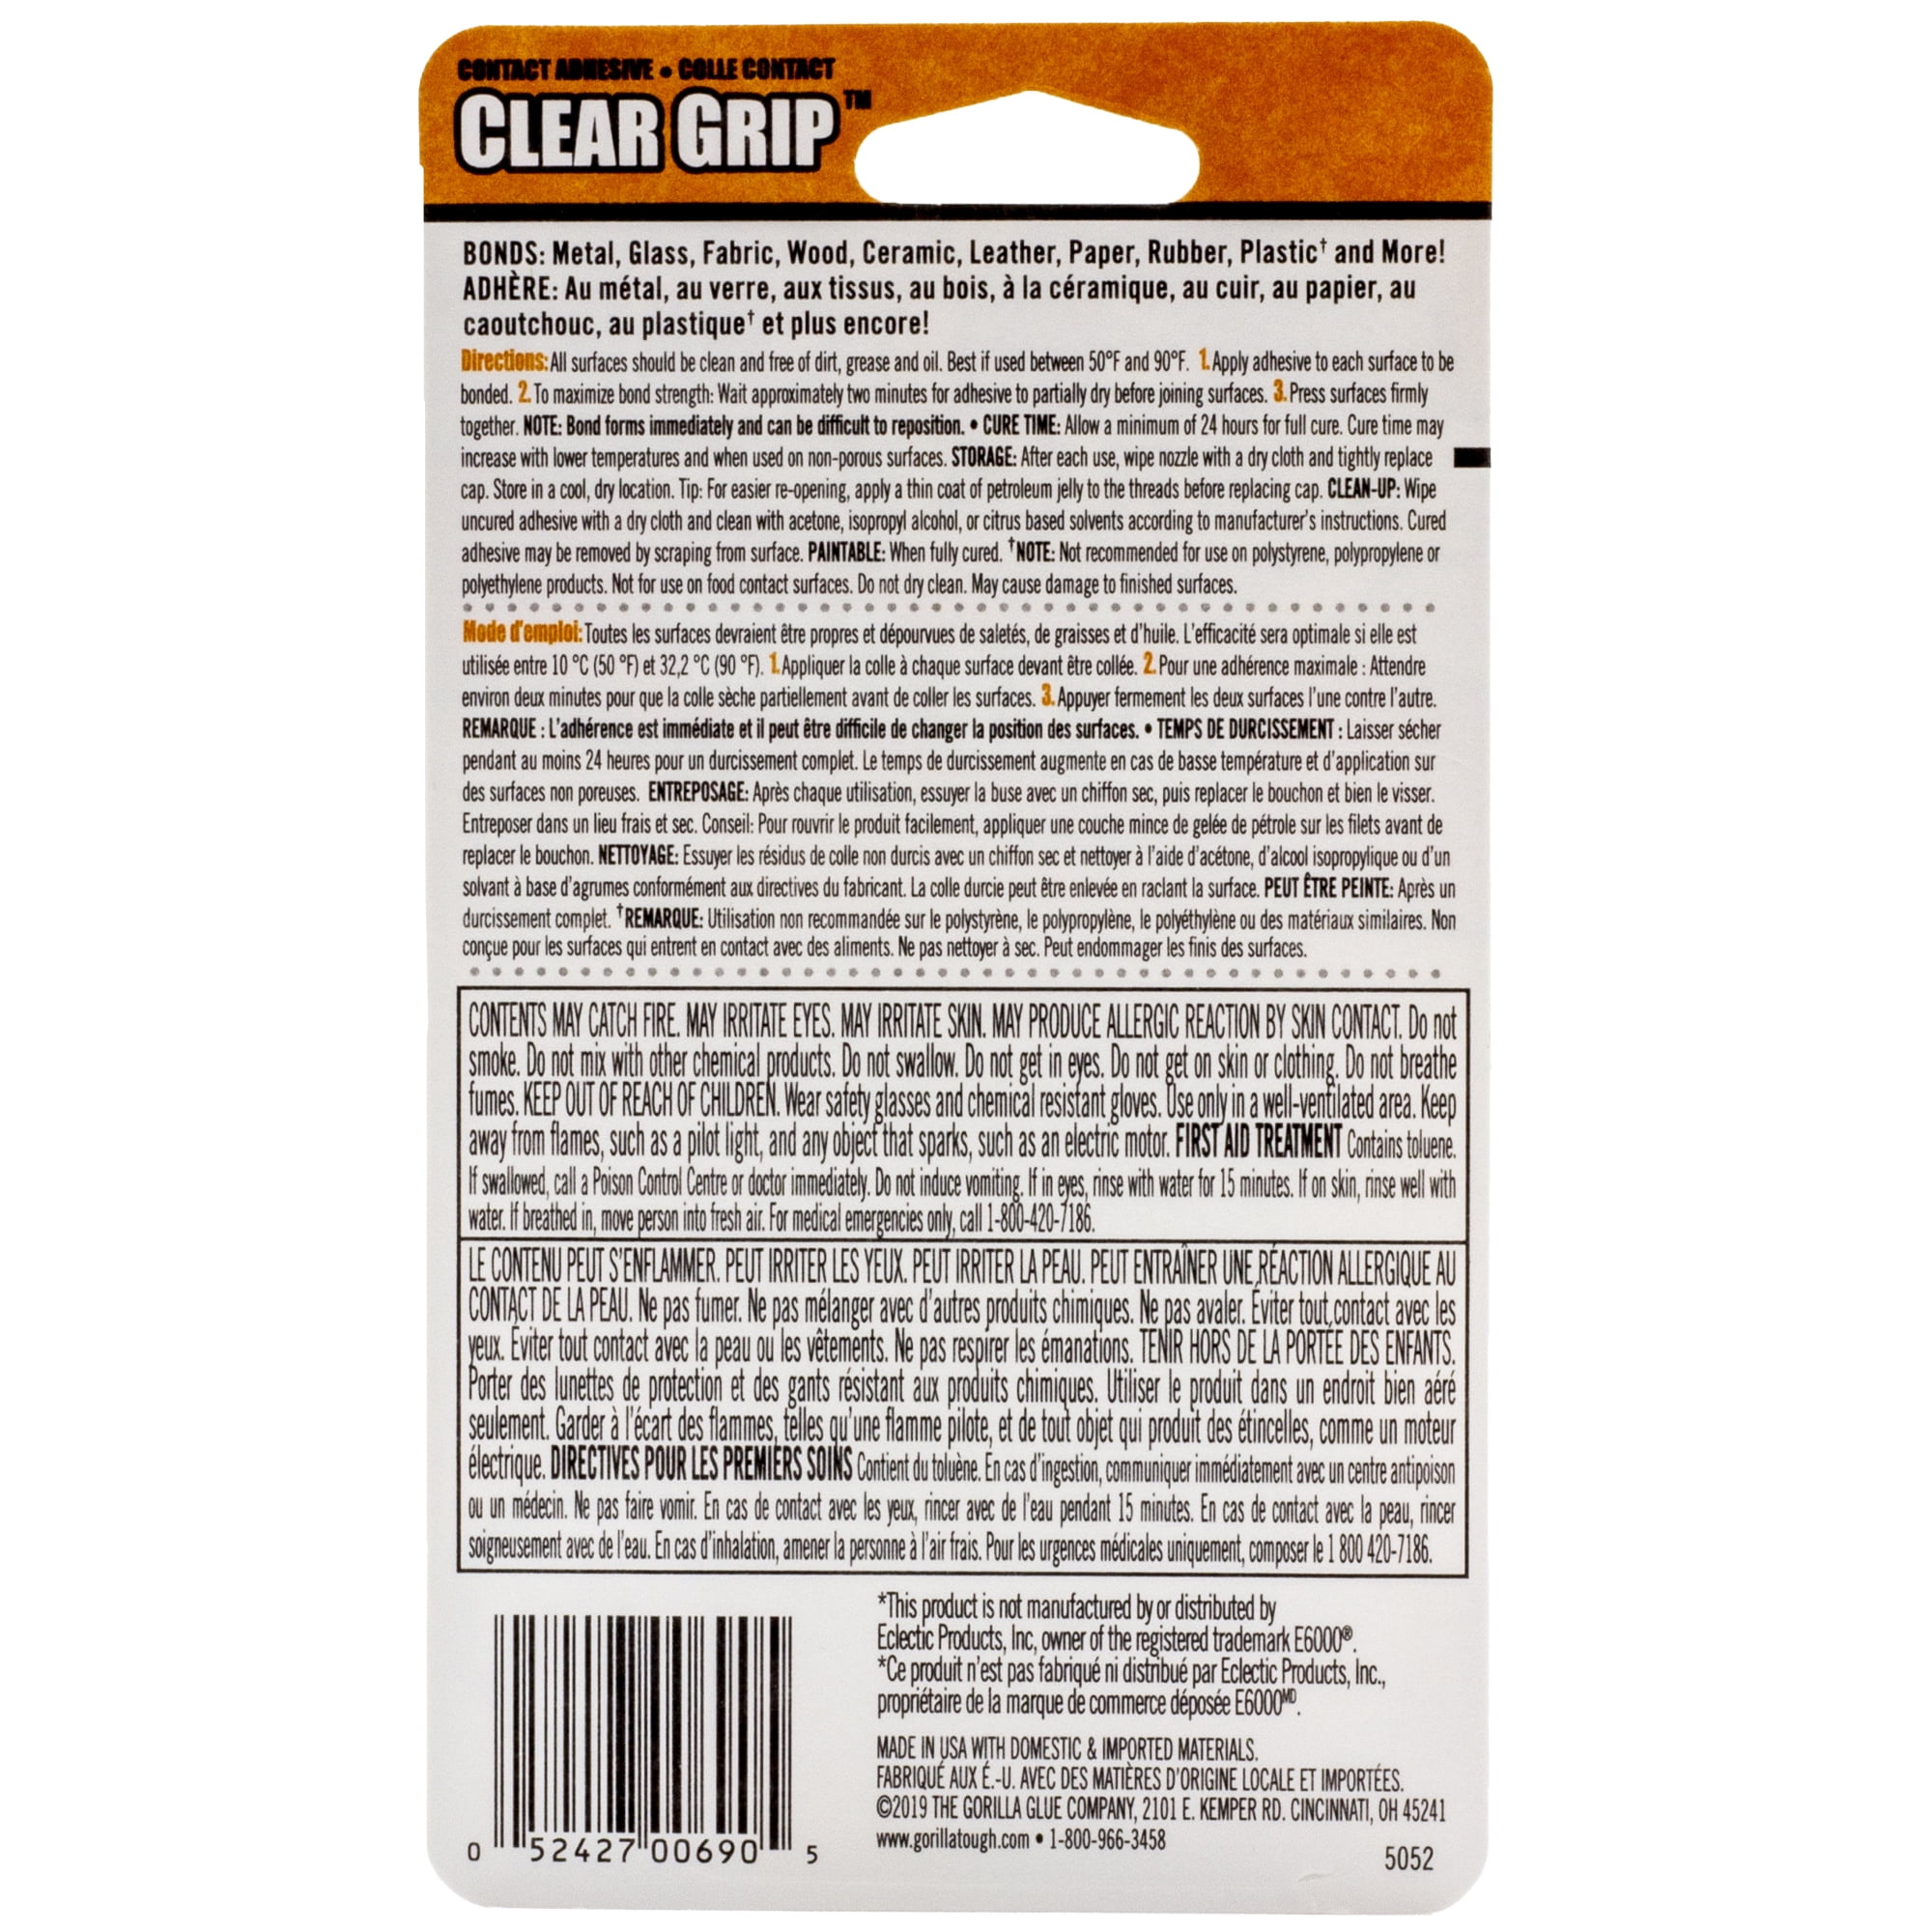 Clear Gorilla Glue Mini Tubes, 3 Grams - 4 Per Pack - Pkg Qty 6